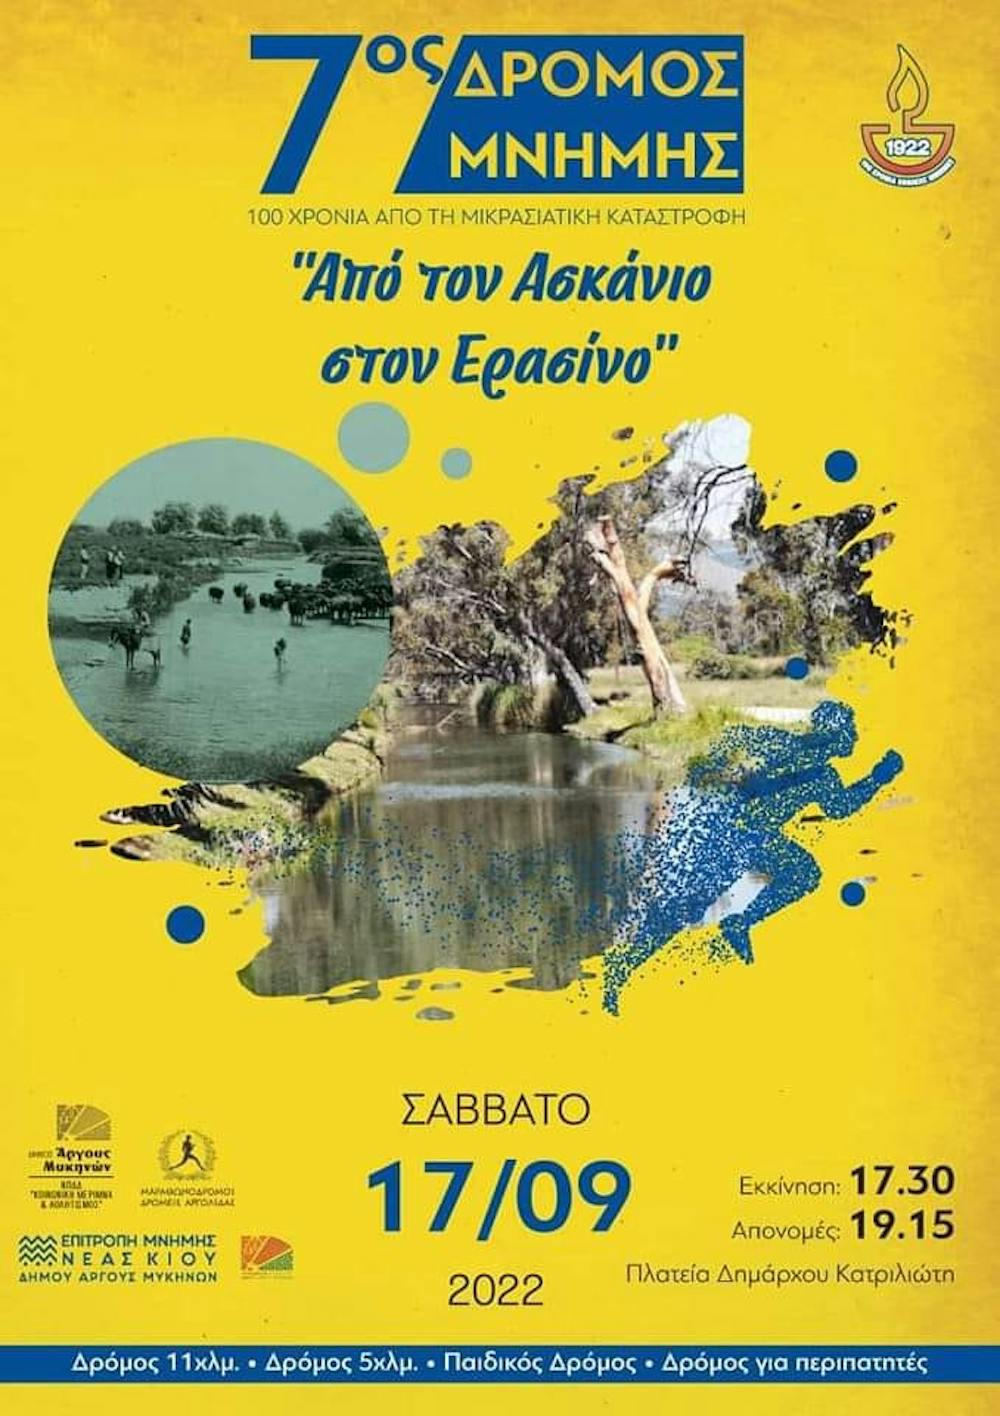 «Από τον Ασκάνιο στον Ερασίνο»: 7ος Αγώνας Δρόμου Μνήμης για τη Μικρασιατική Καταστροφή στις 17/09 runbeat.gr 